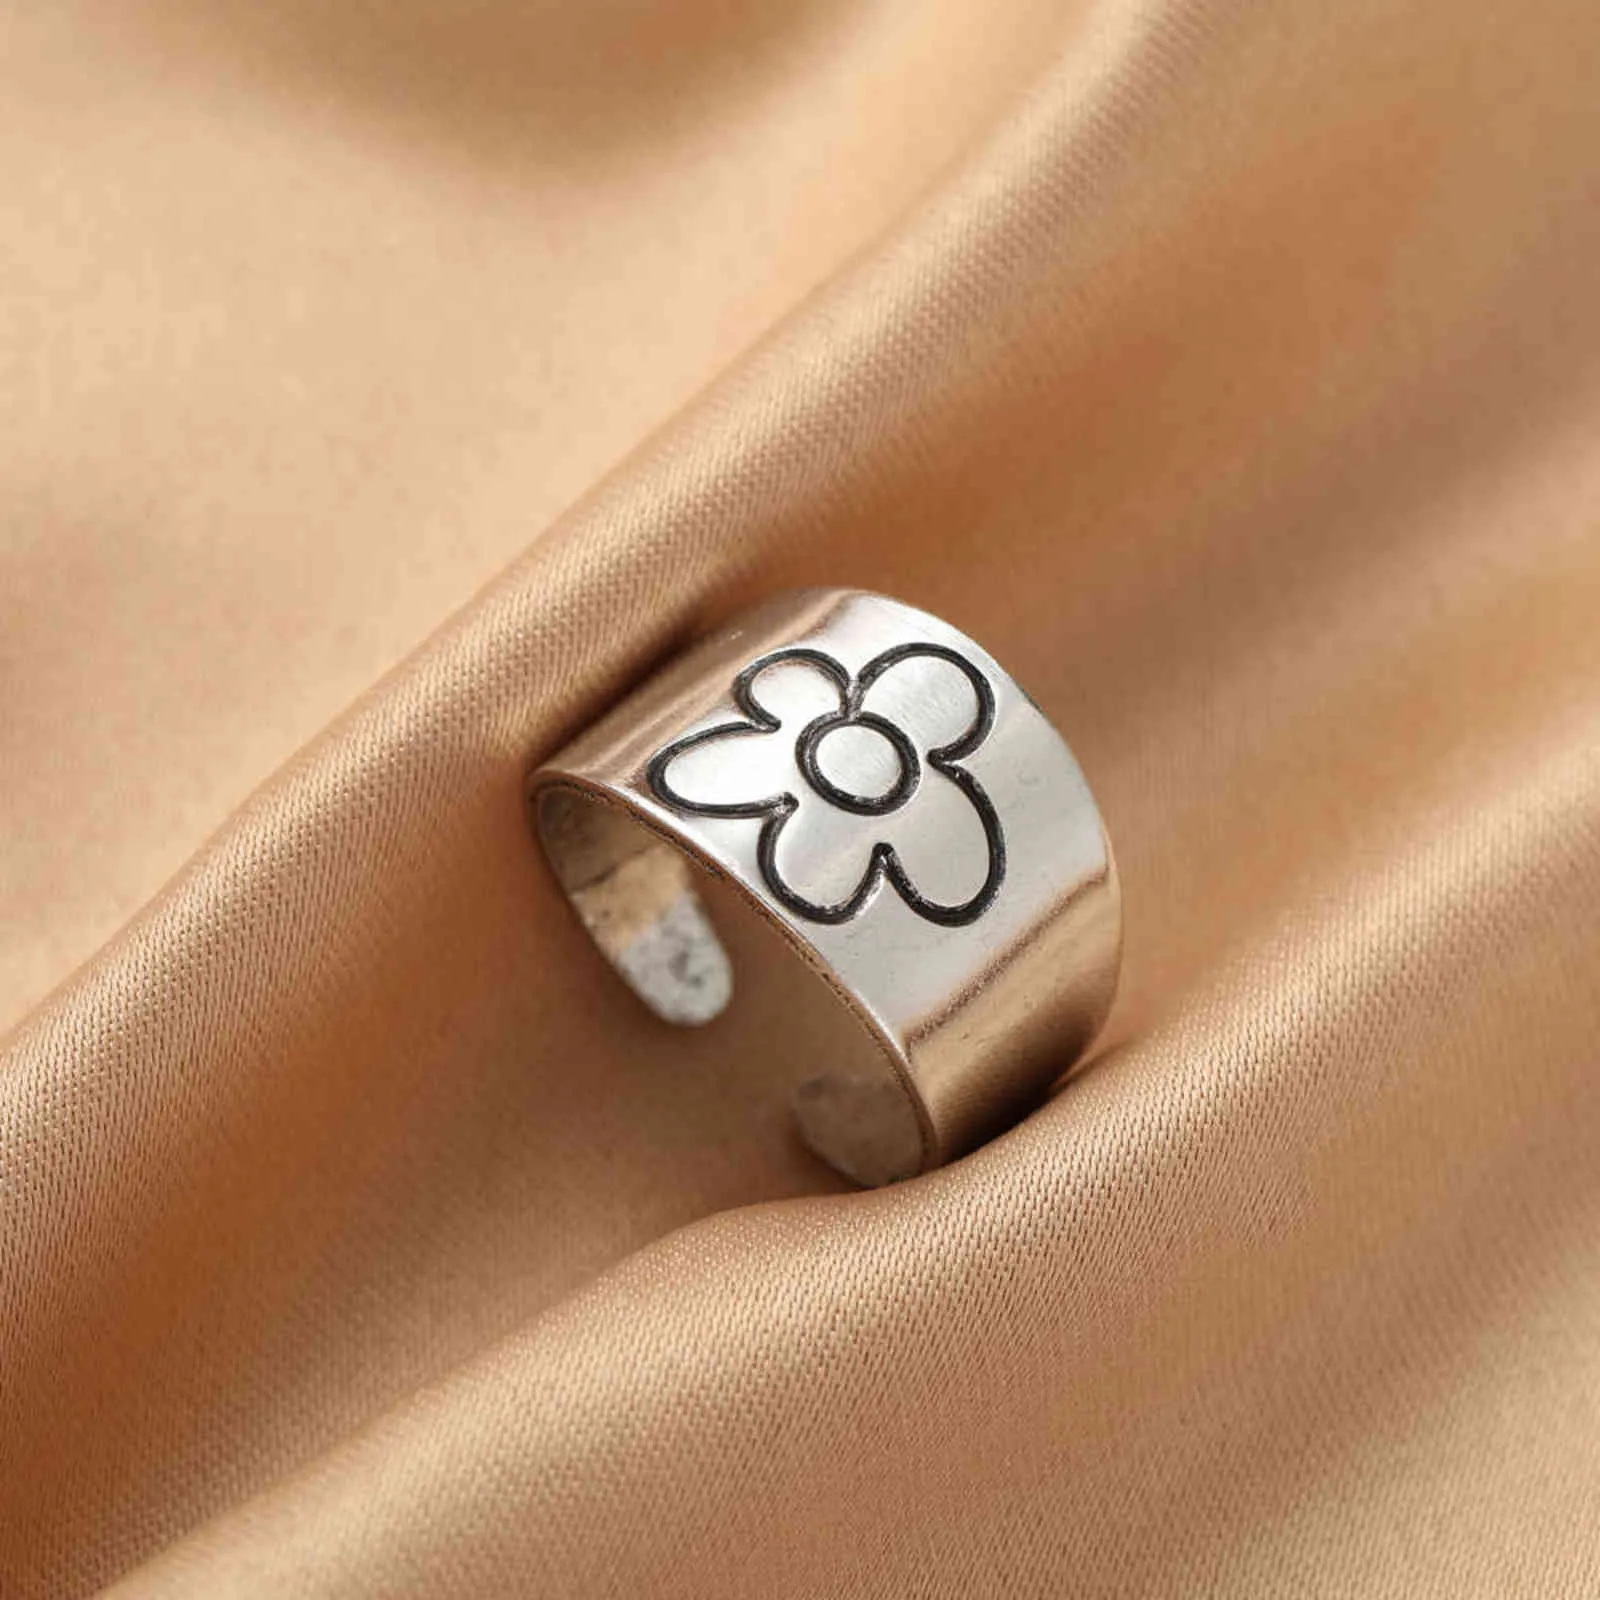 Новая мода творческий панк готические шипы любви сердца кольцо старинные открытые кольца для женщин вечеринка ювелирные изделия подарки Хэллоуин всю продажу G1125